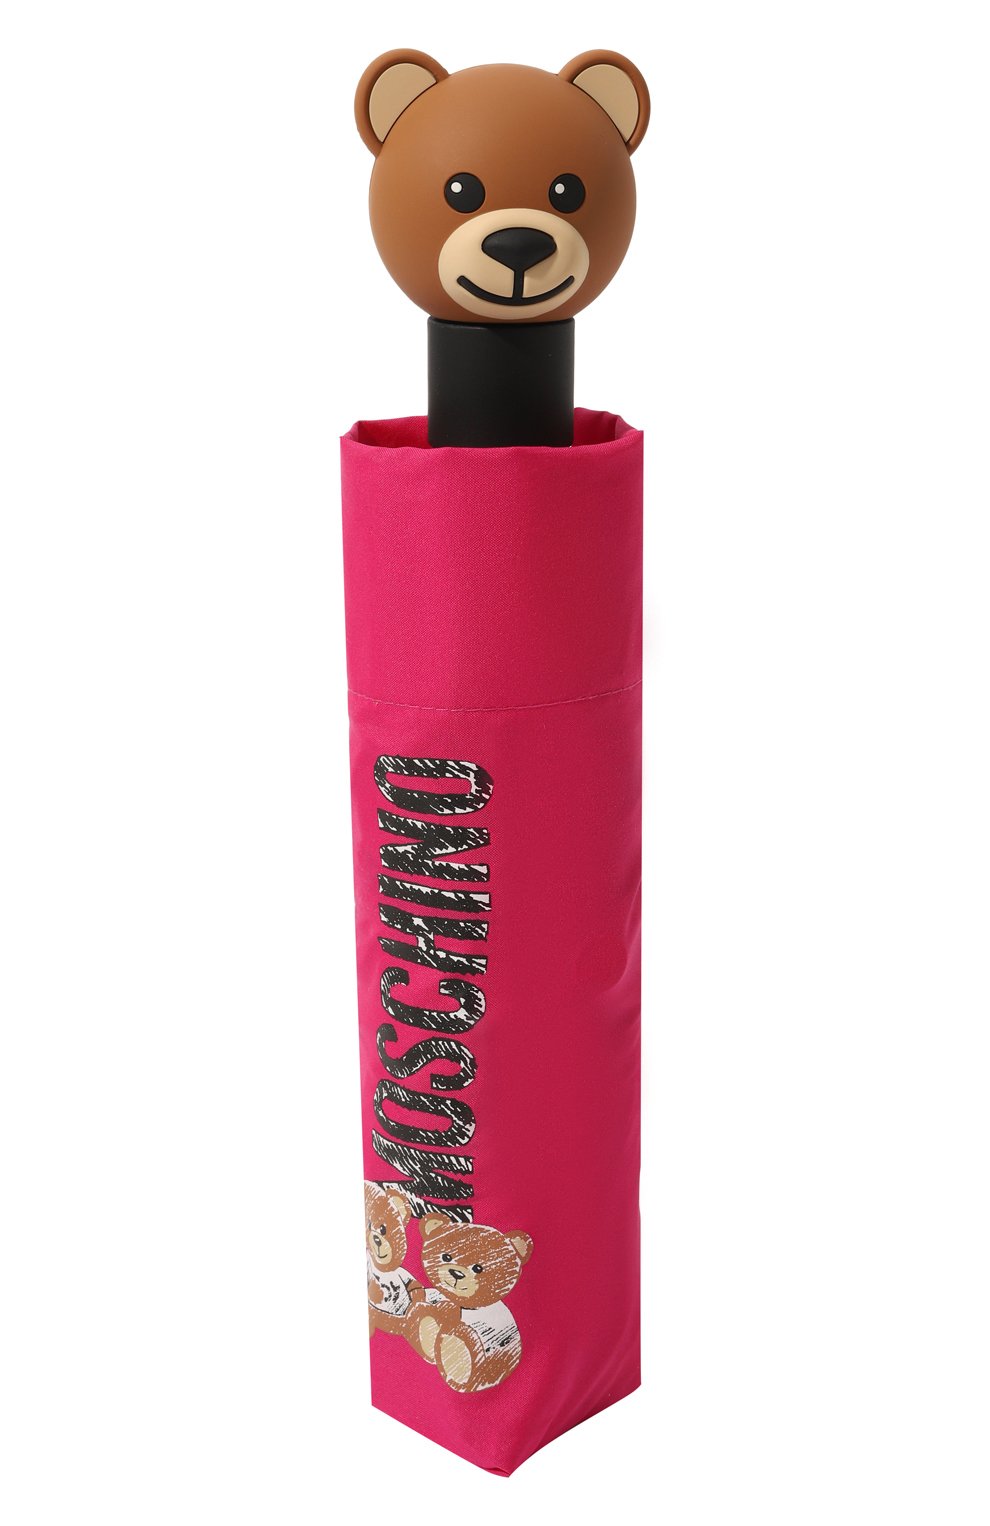 Женский складной зонт MOSCHINO фуксия цвета, арт. 8169-0PENCL0SE | Фото 4 (Материал: Текстиль, Синтетический материал, Металл)